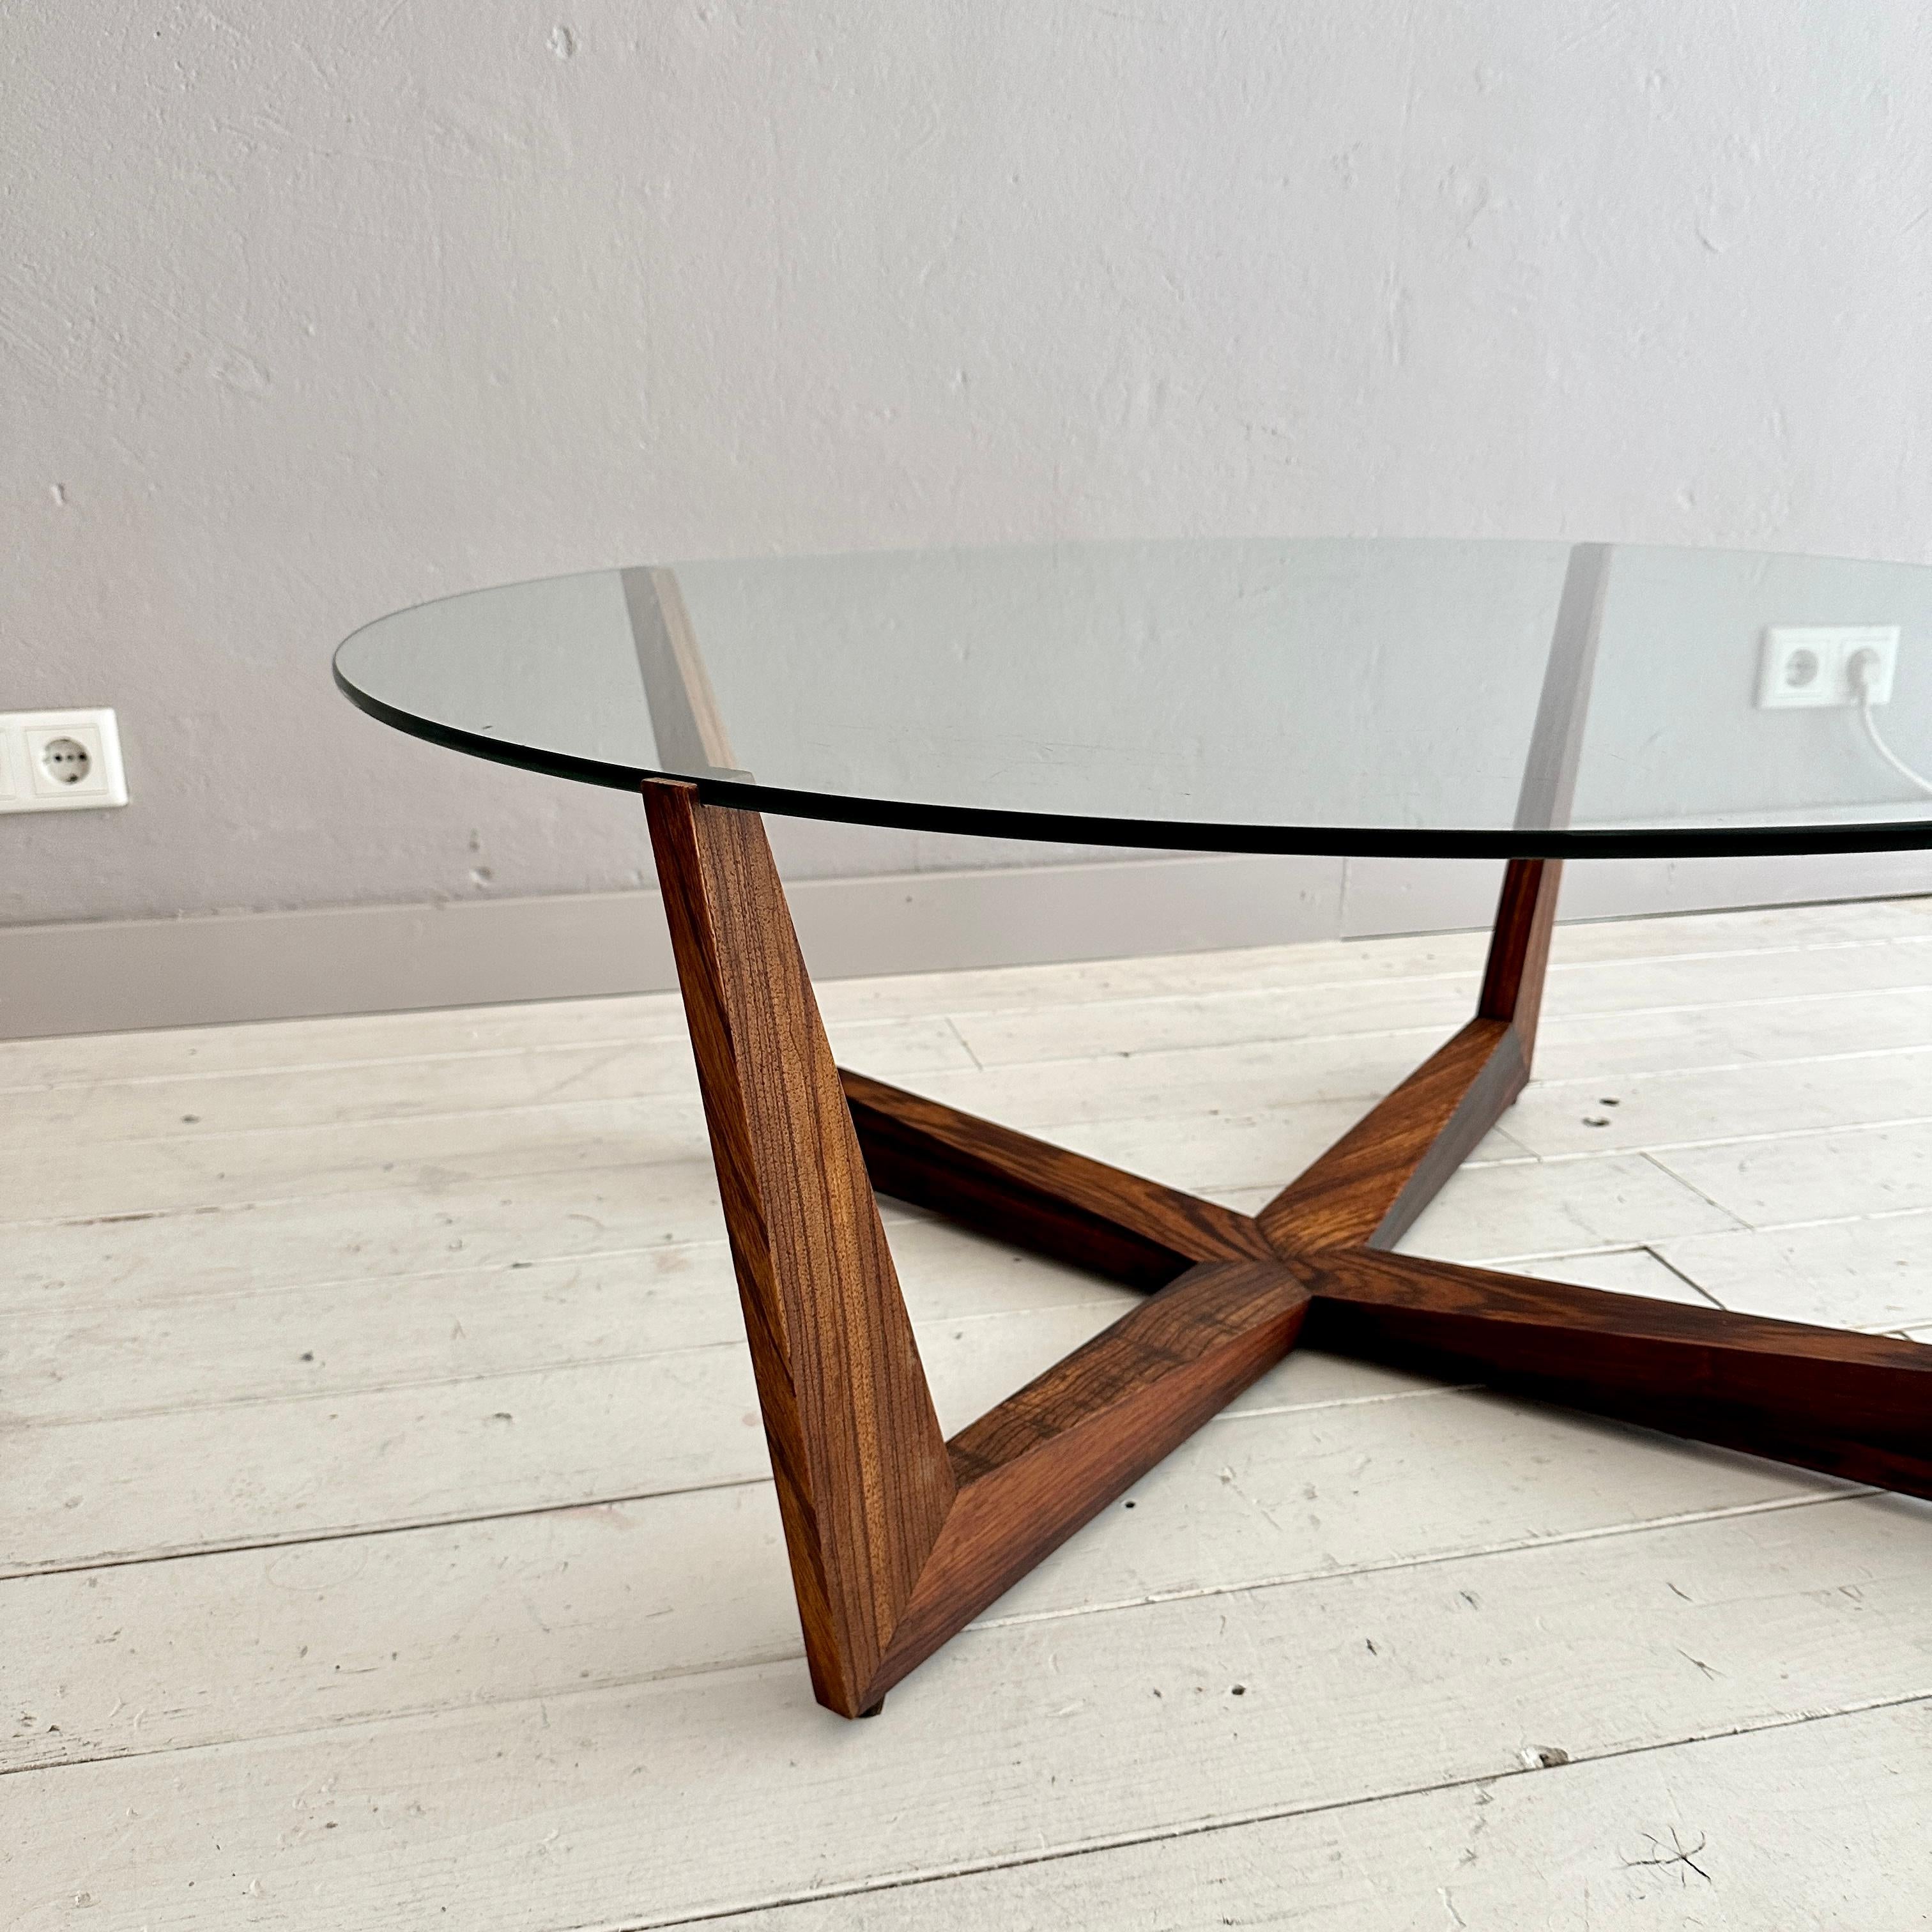 Cette rare table basse ronde de Wilhelm Renz a été fabriquée en teck et en verre vers 1960.
Une pièce unique qui attirera tous les regards dans votre intérieur antique, moderne, space age ou mid-century.
Si vous avez d'autres questions, nous serons